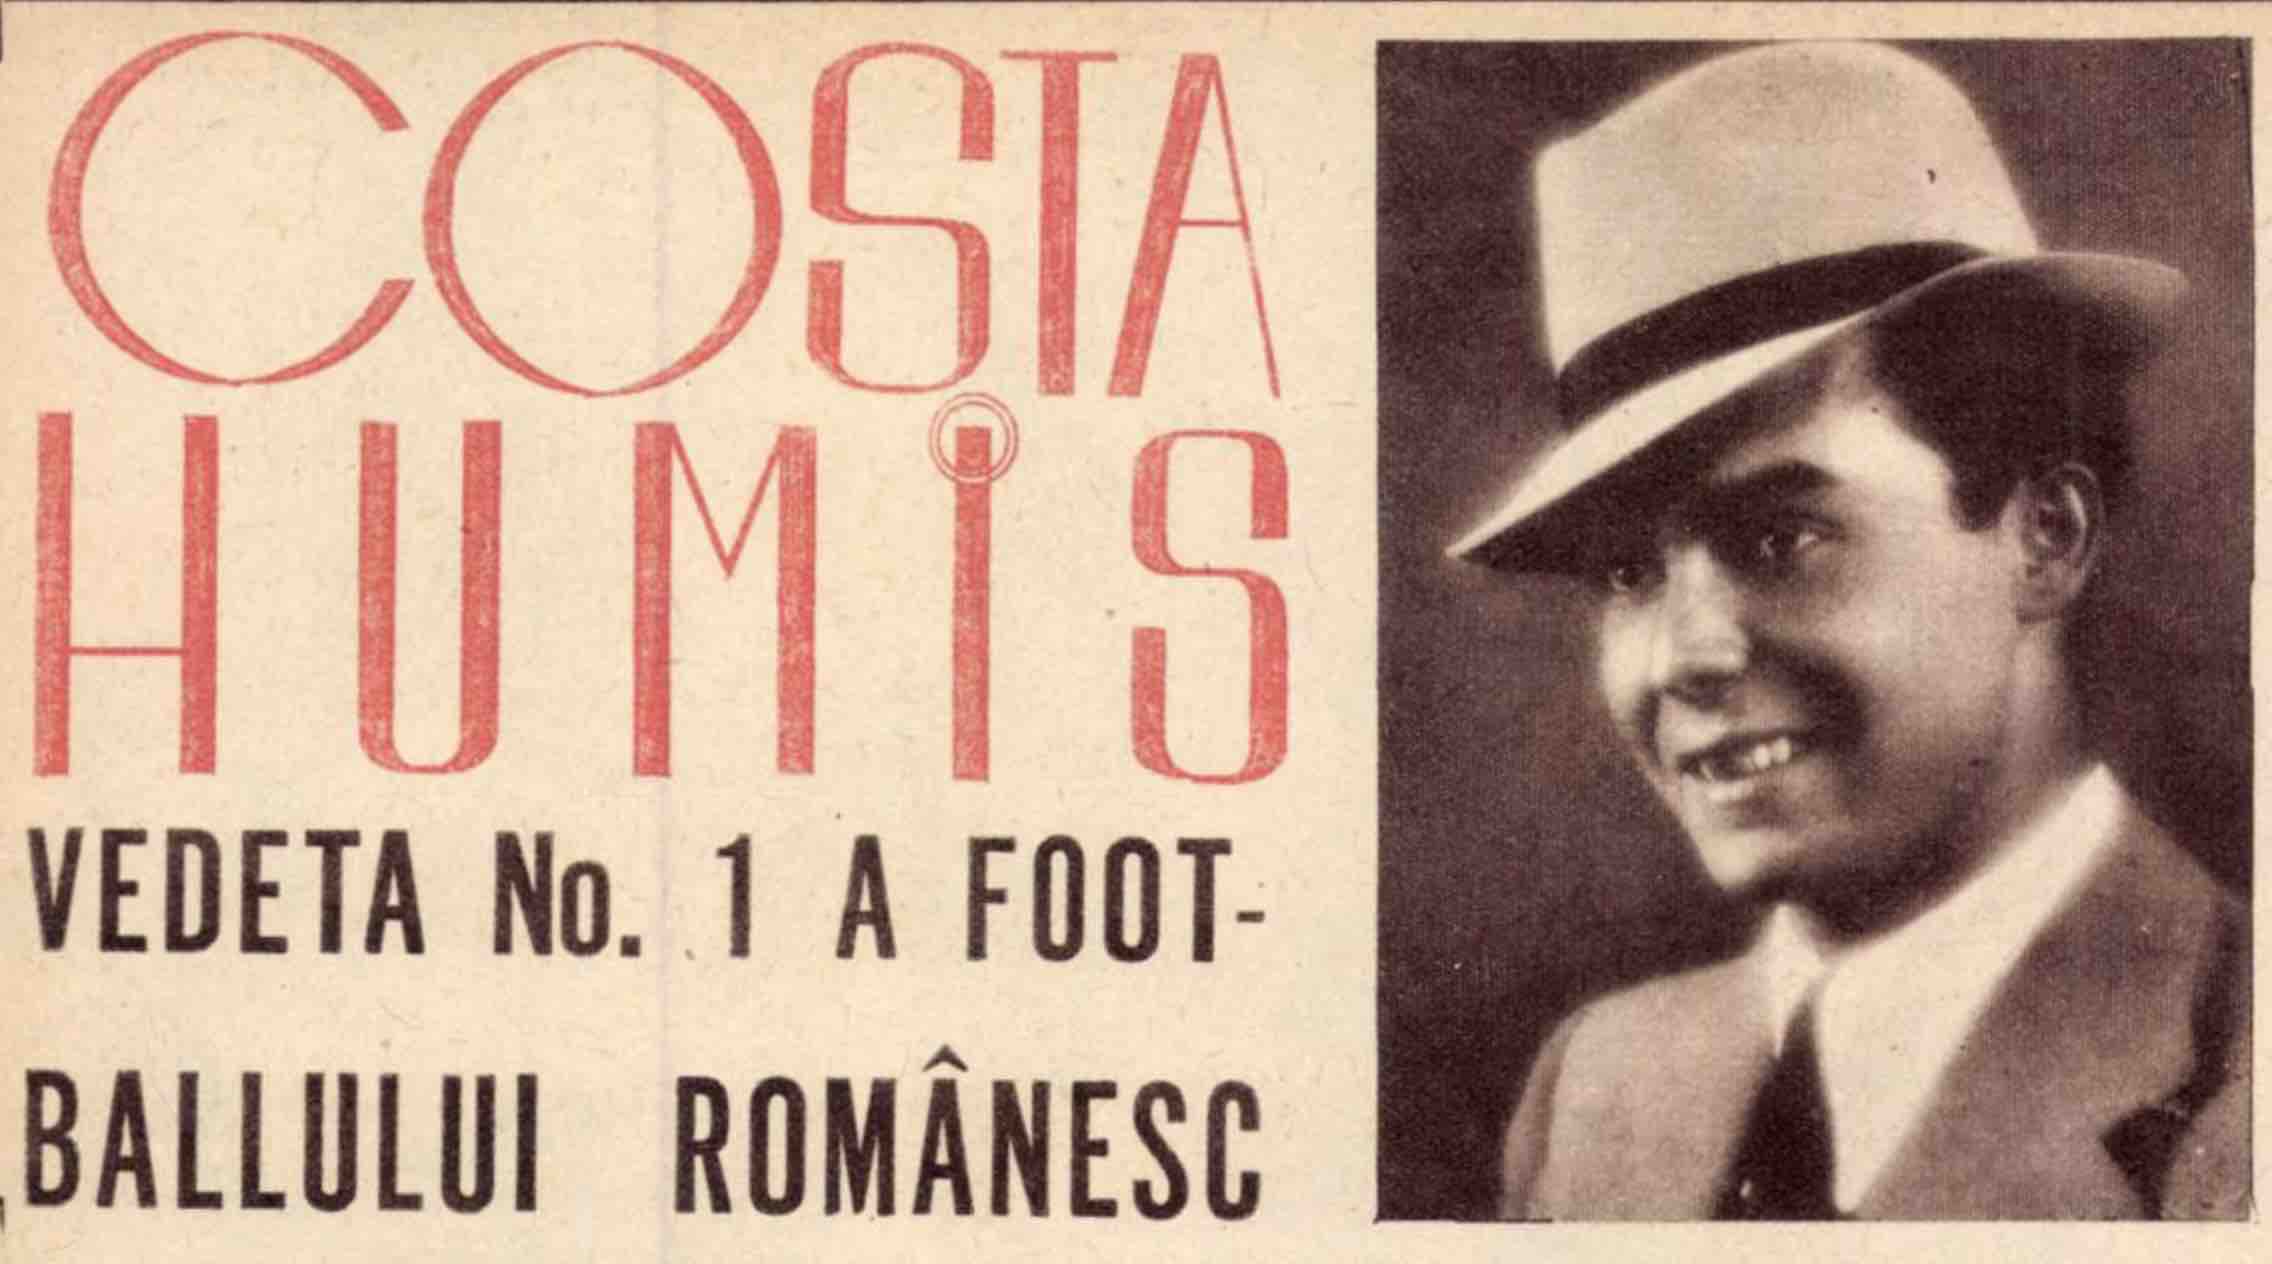 Costa Humis Vedeta No.1 a foot-ballului românesc